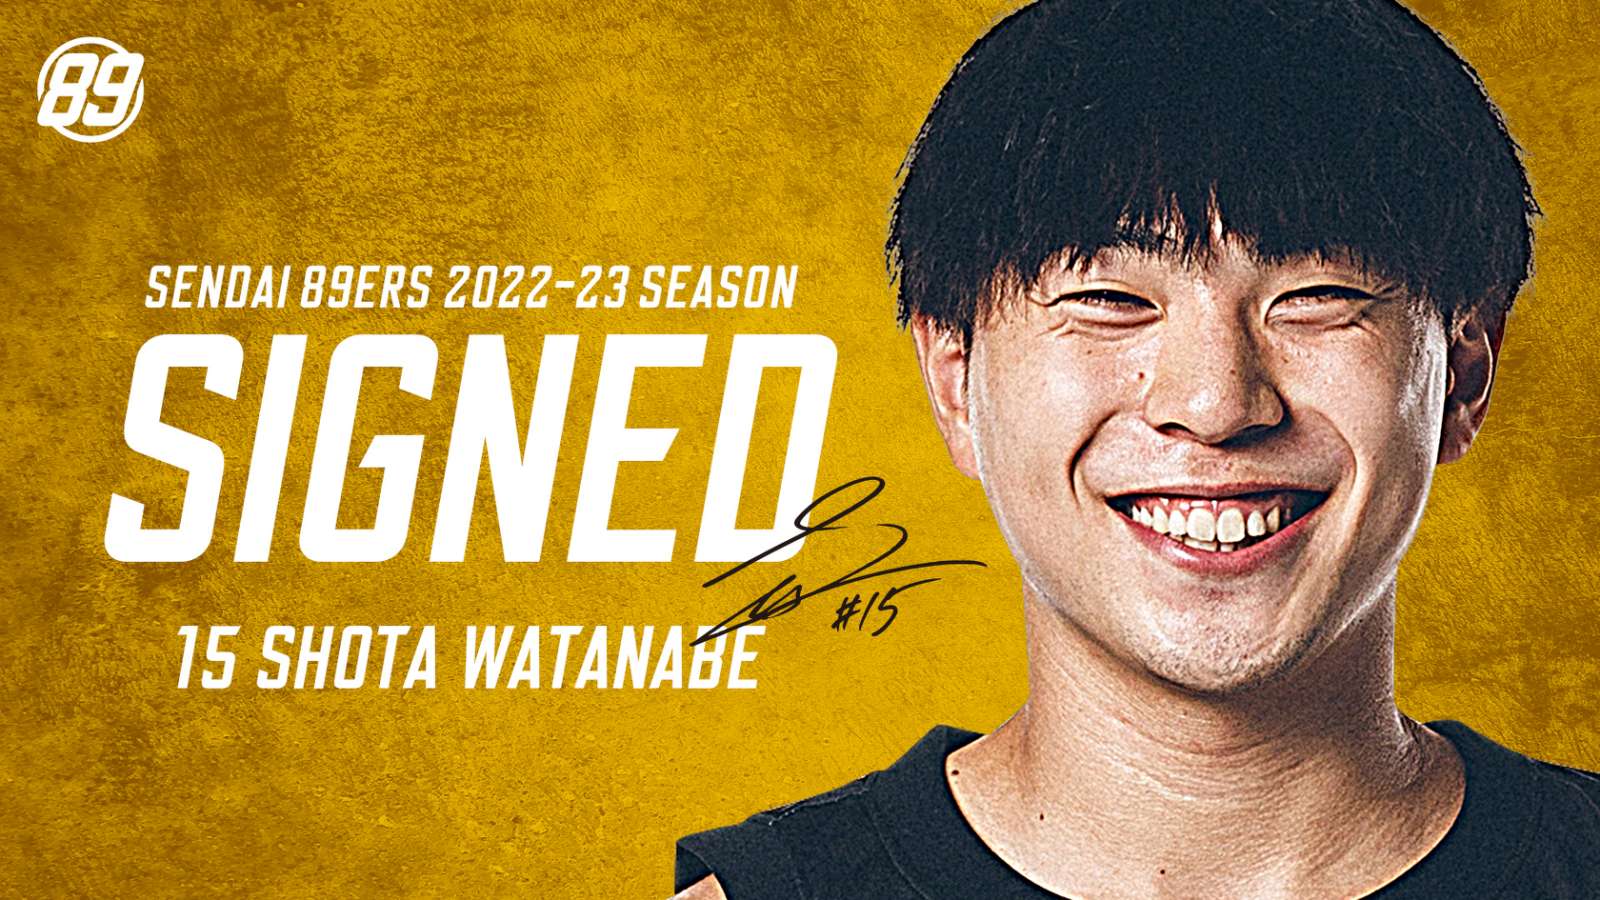 渡辺翔太選手 2022-23シーズン継続契約合意のお知らせ | 仙台89ERS